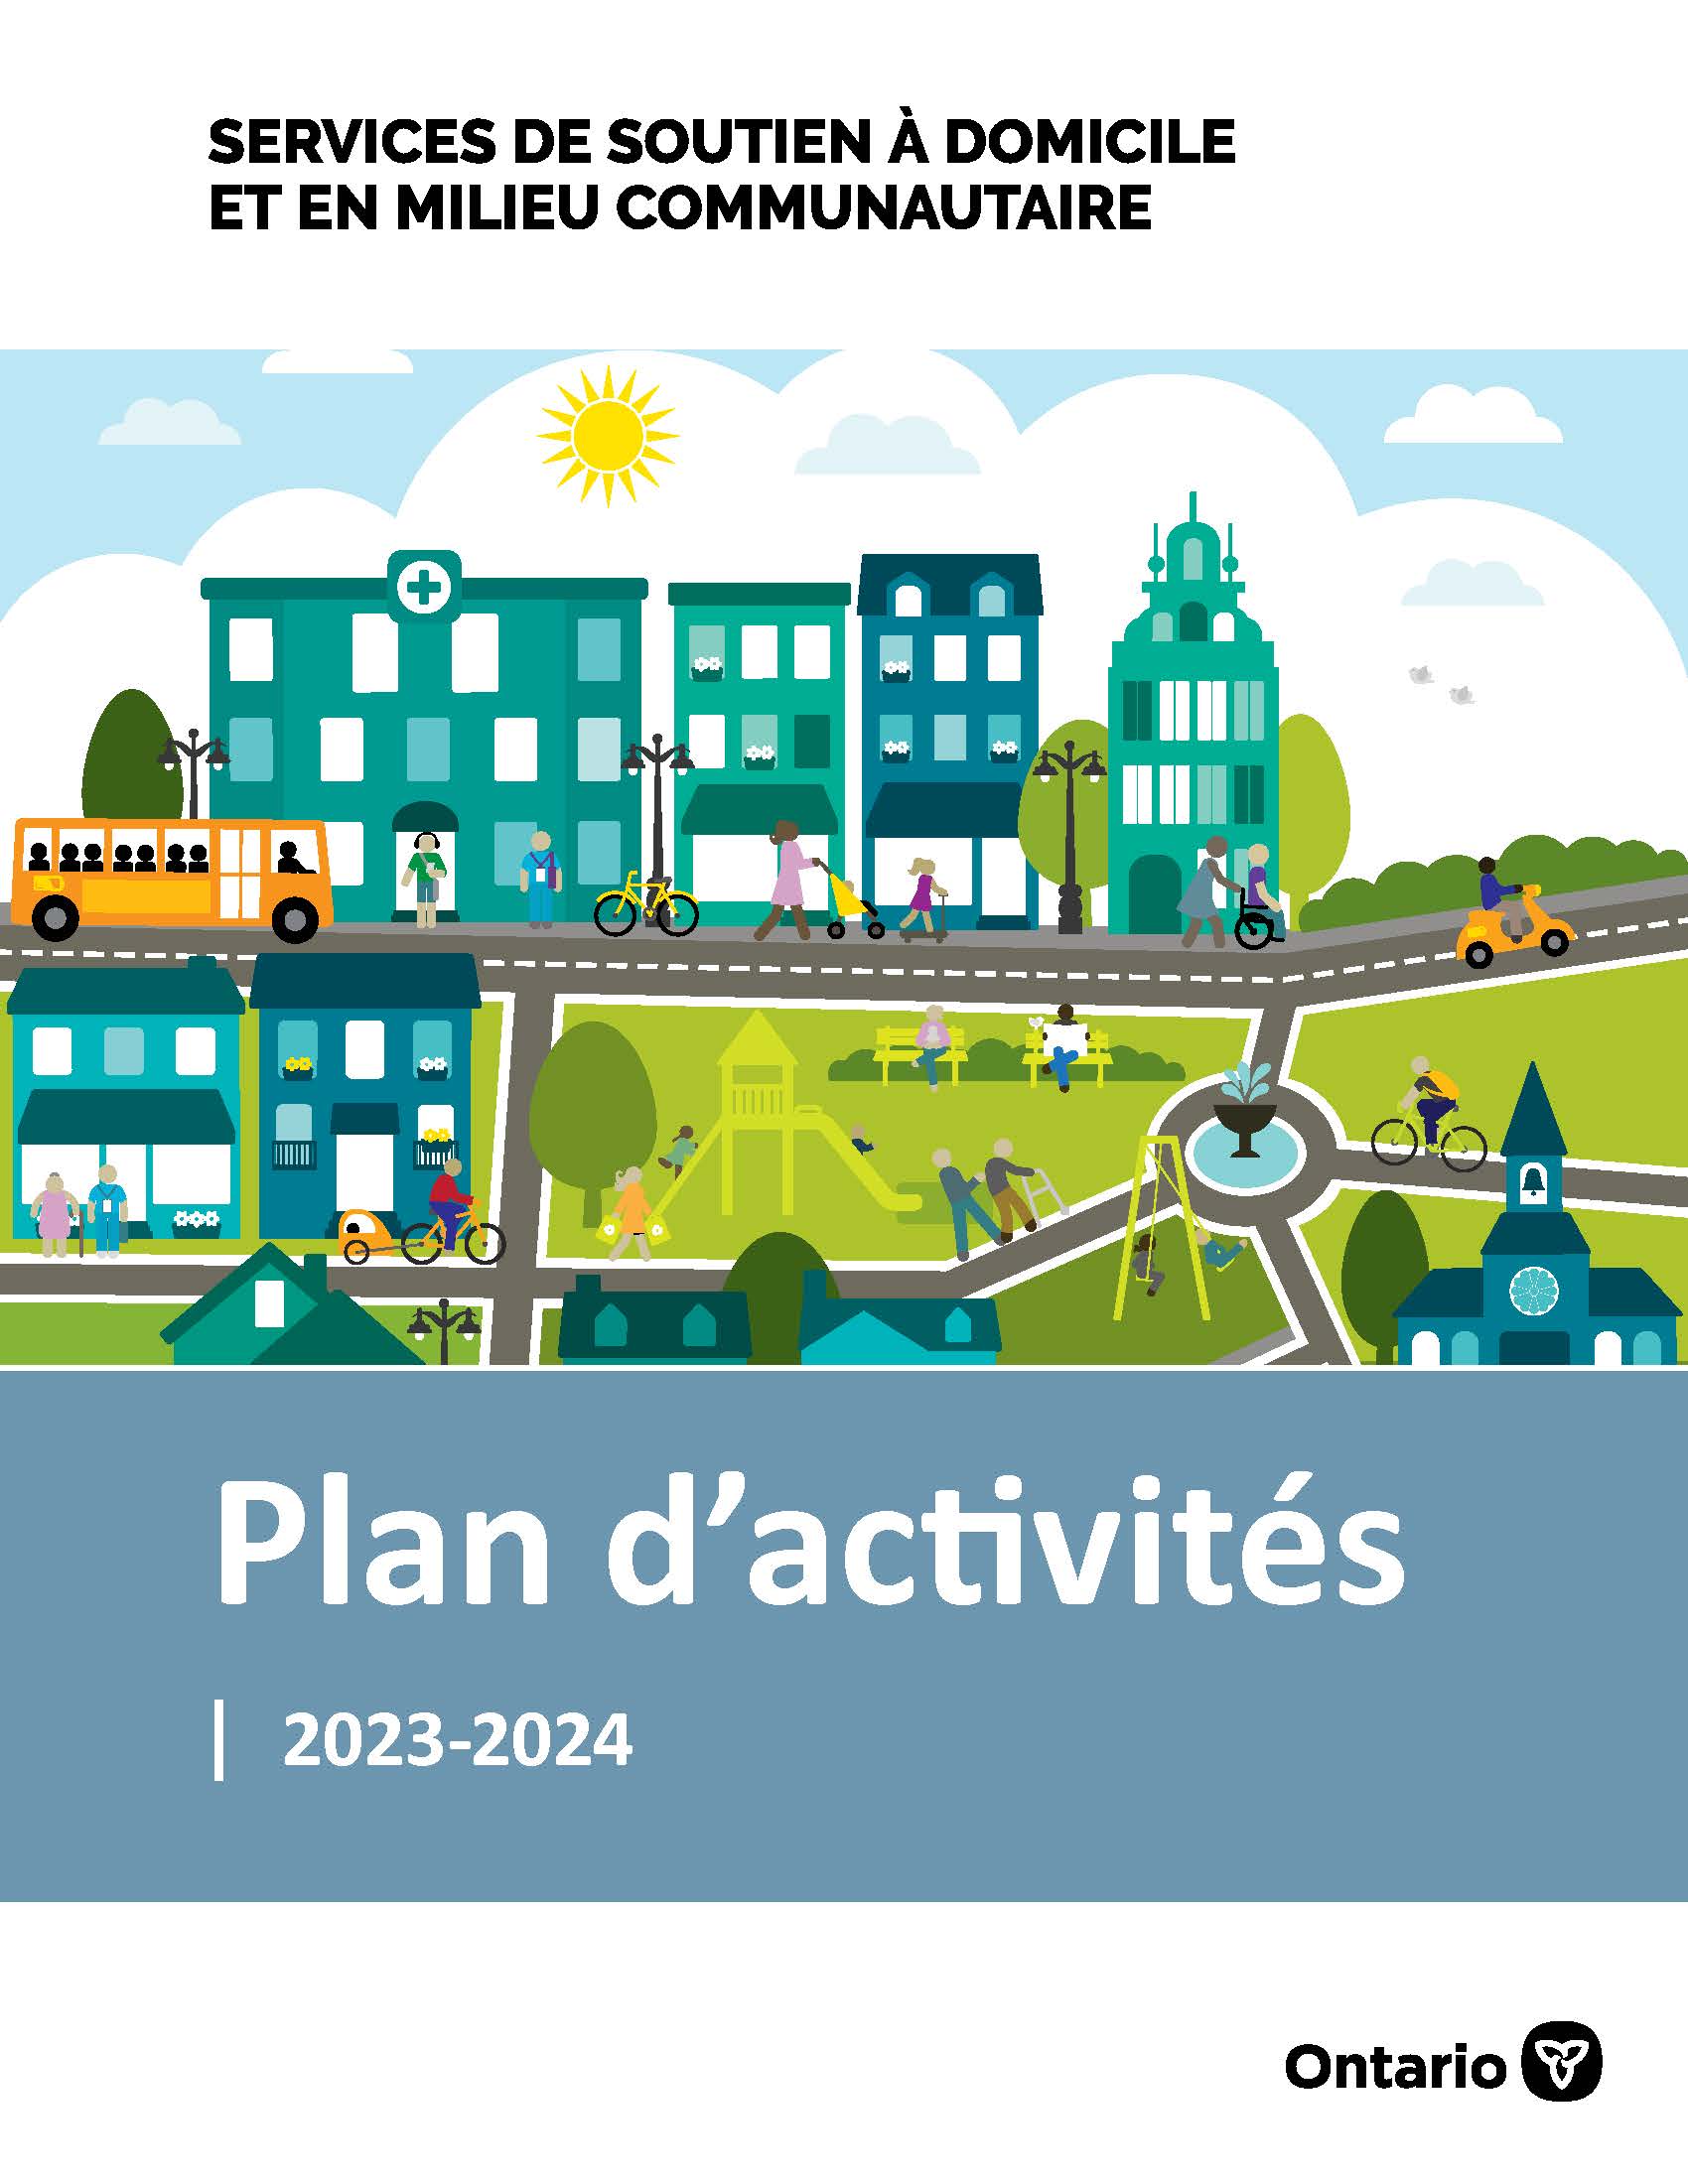 Image de la page titre du Plan d’activités annuel 2023-2024